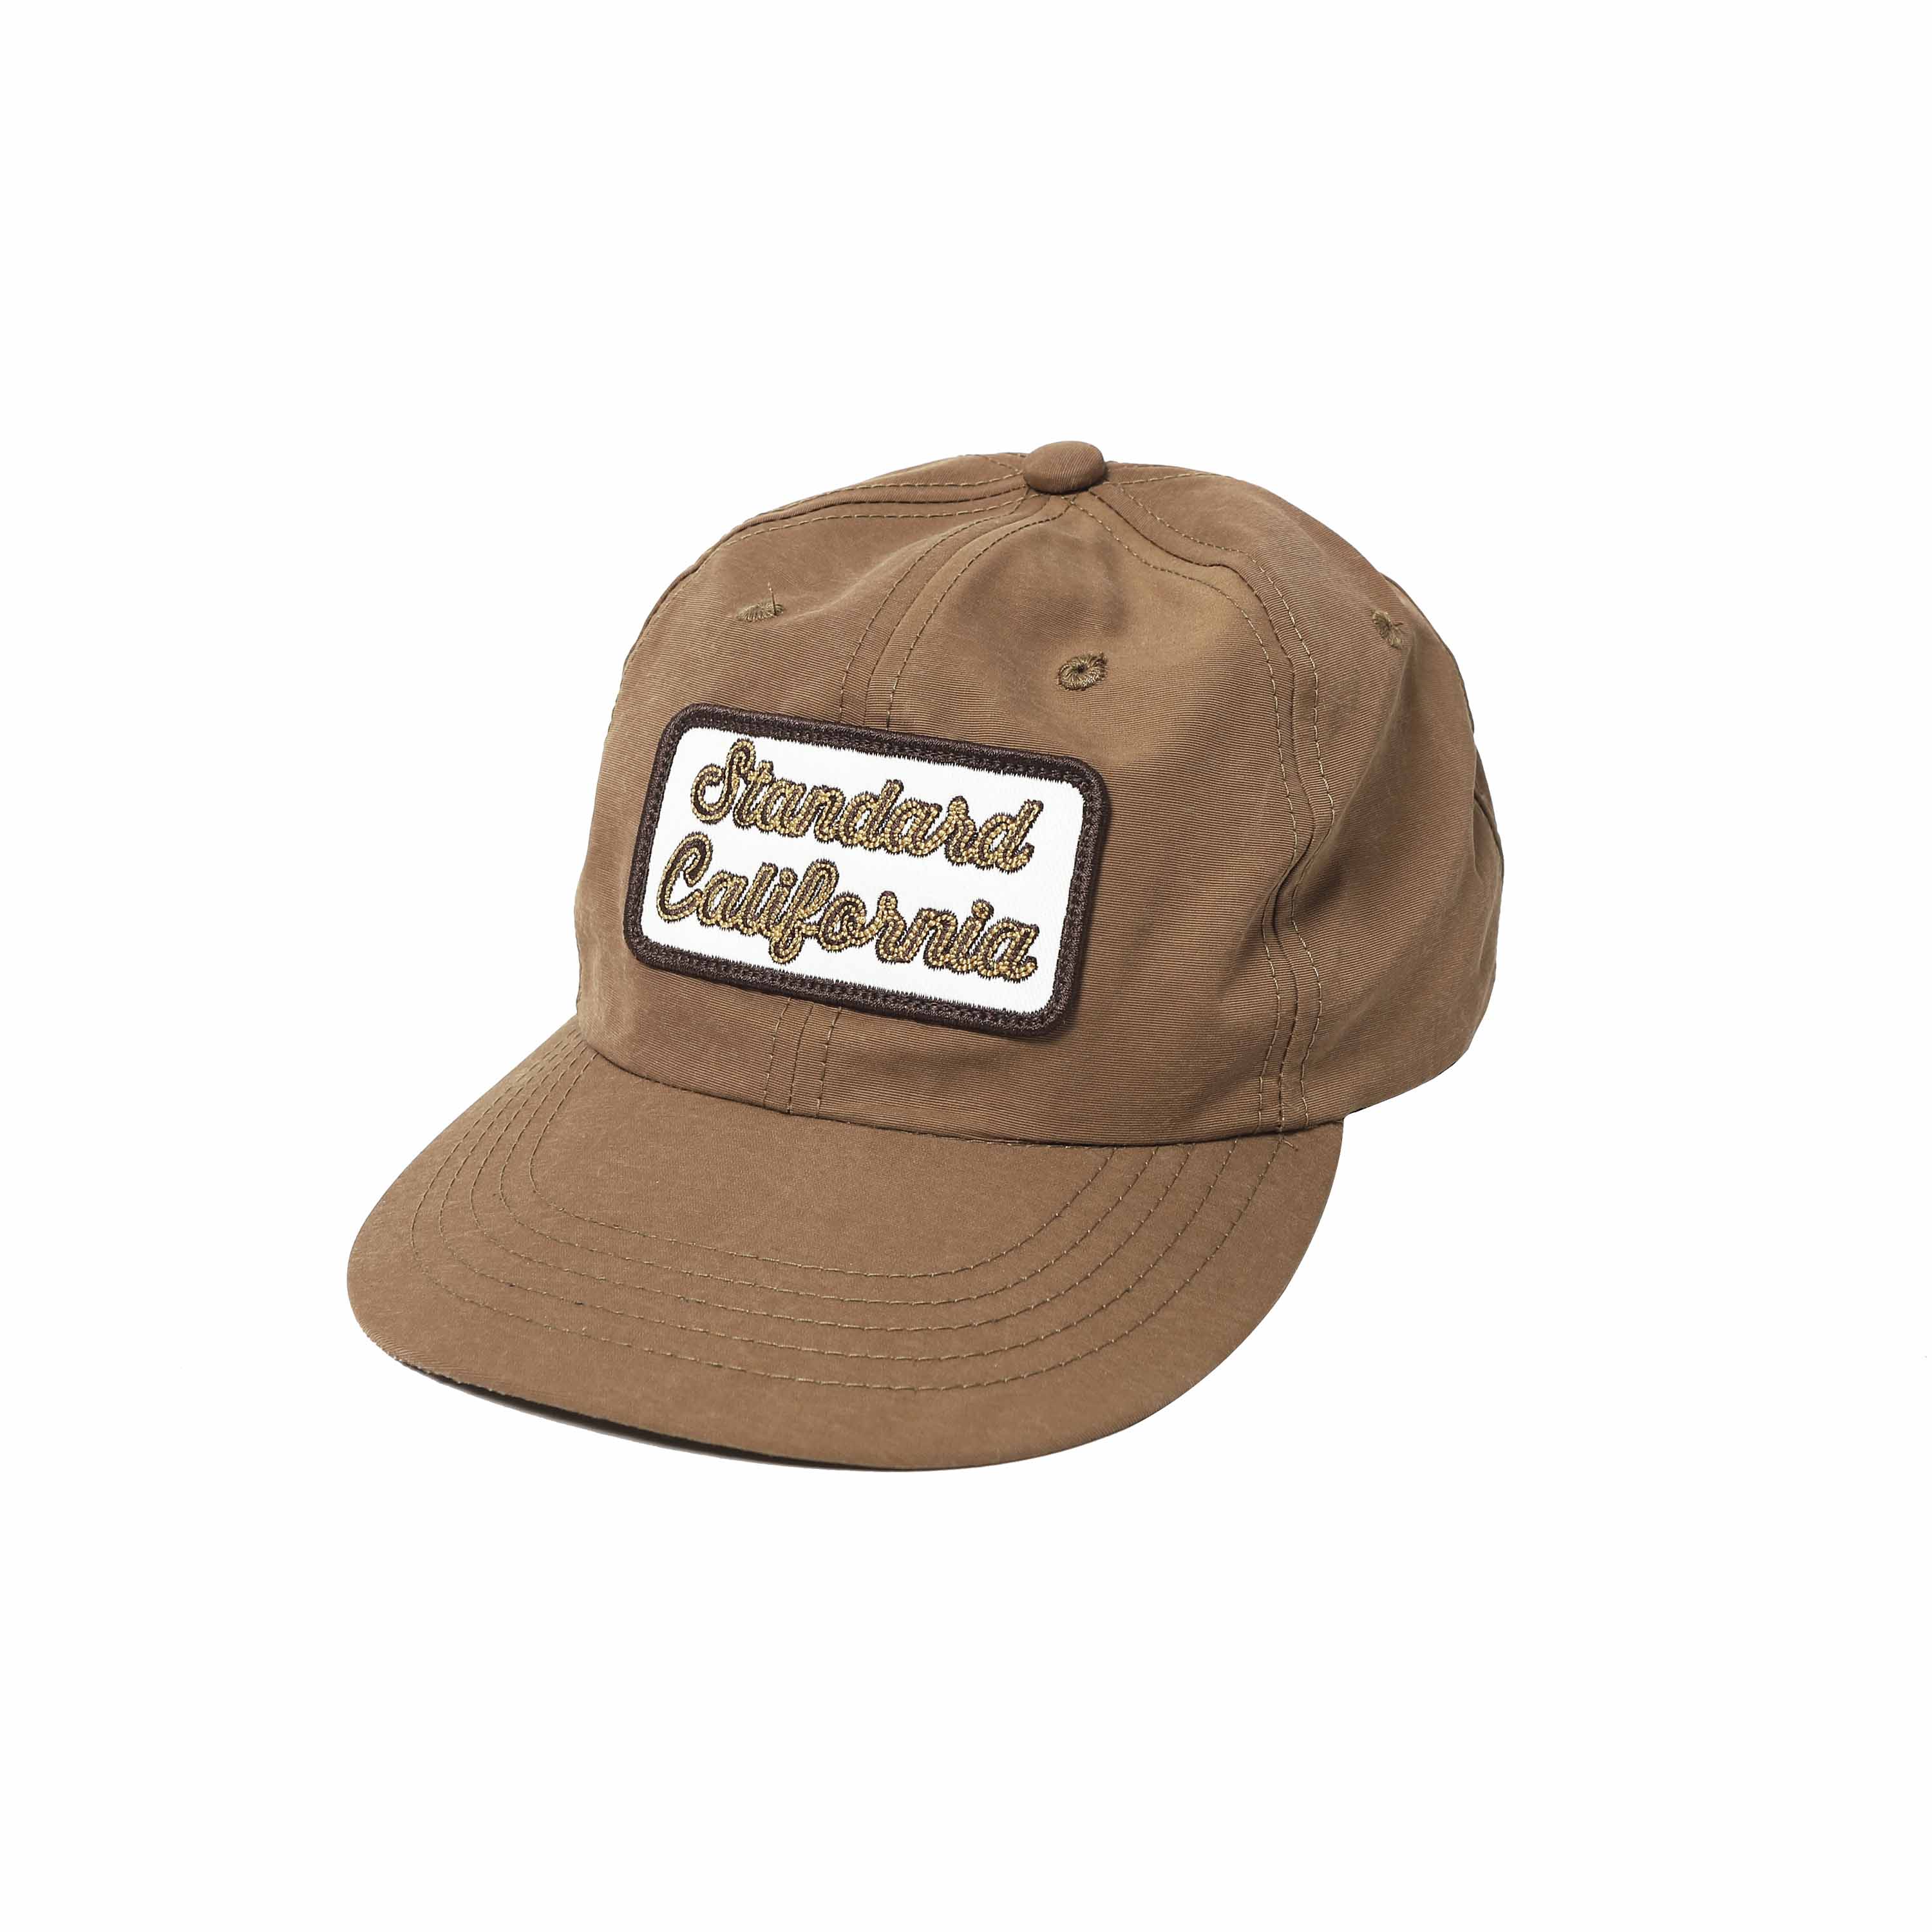 LOGO PATCH 60/40 CLOTH CAP - BEIGE